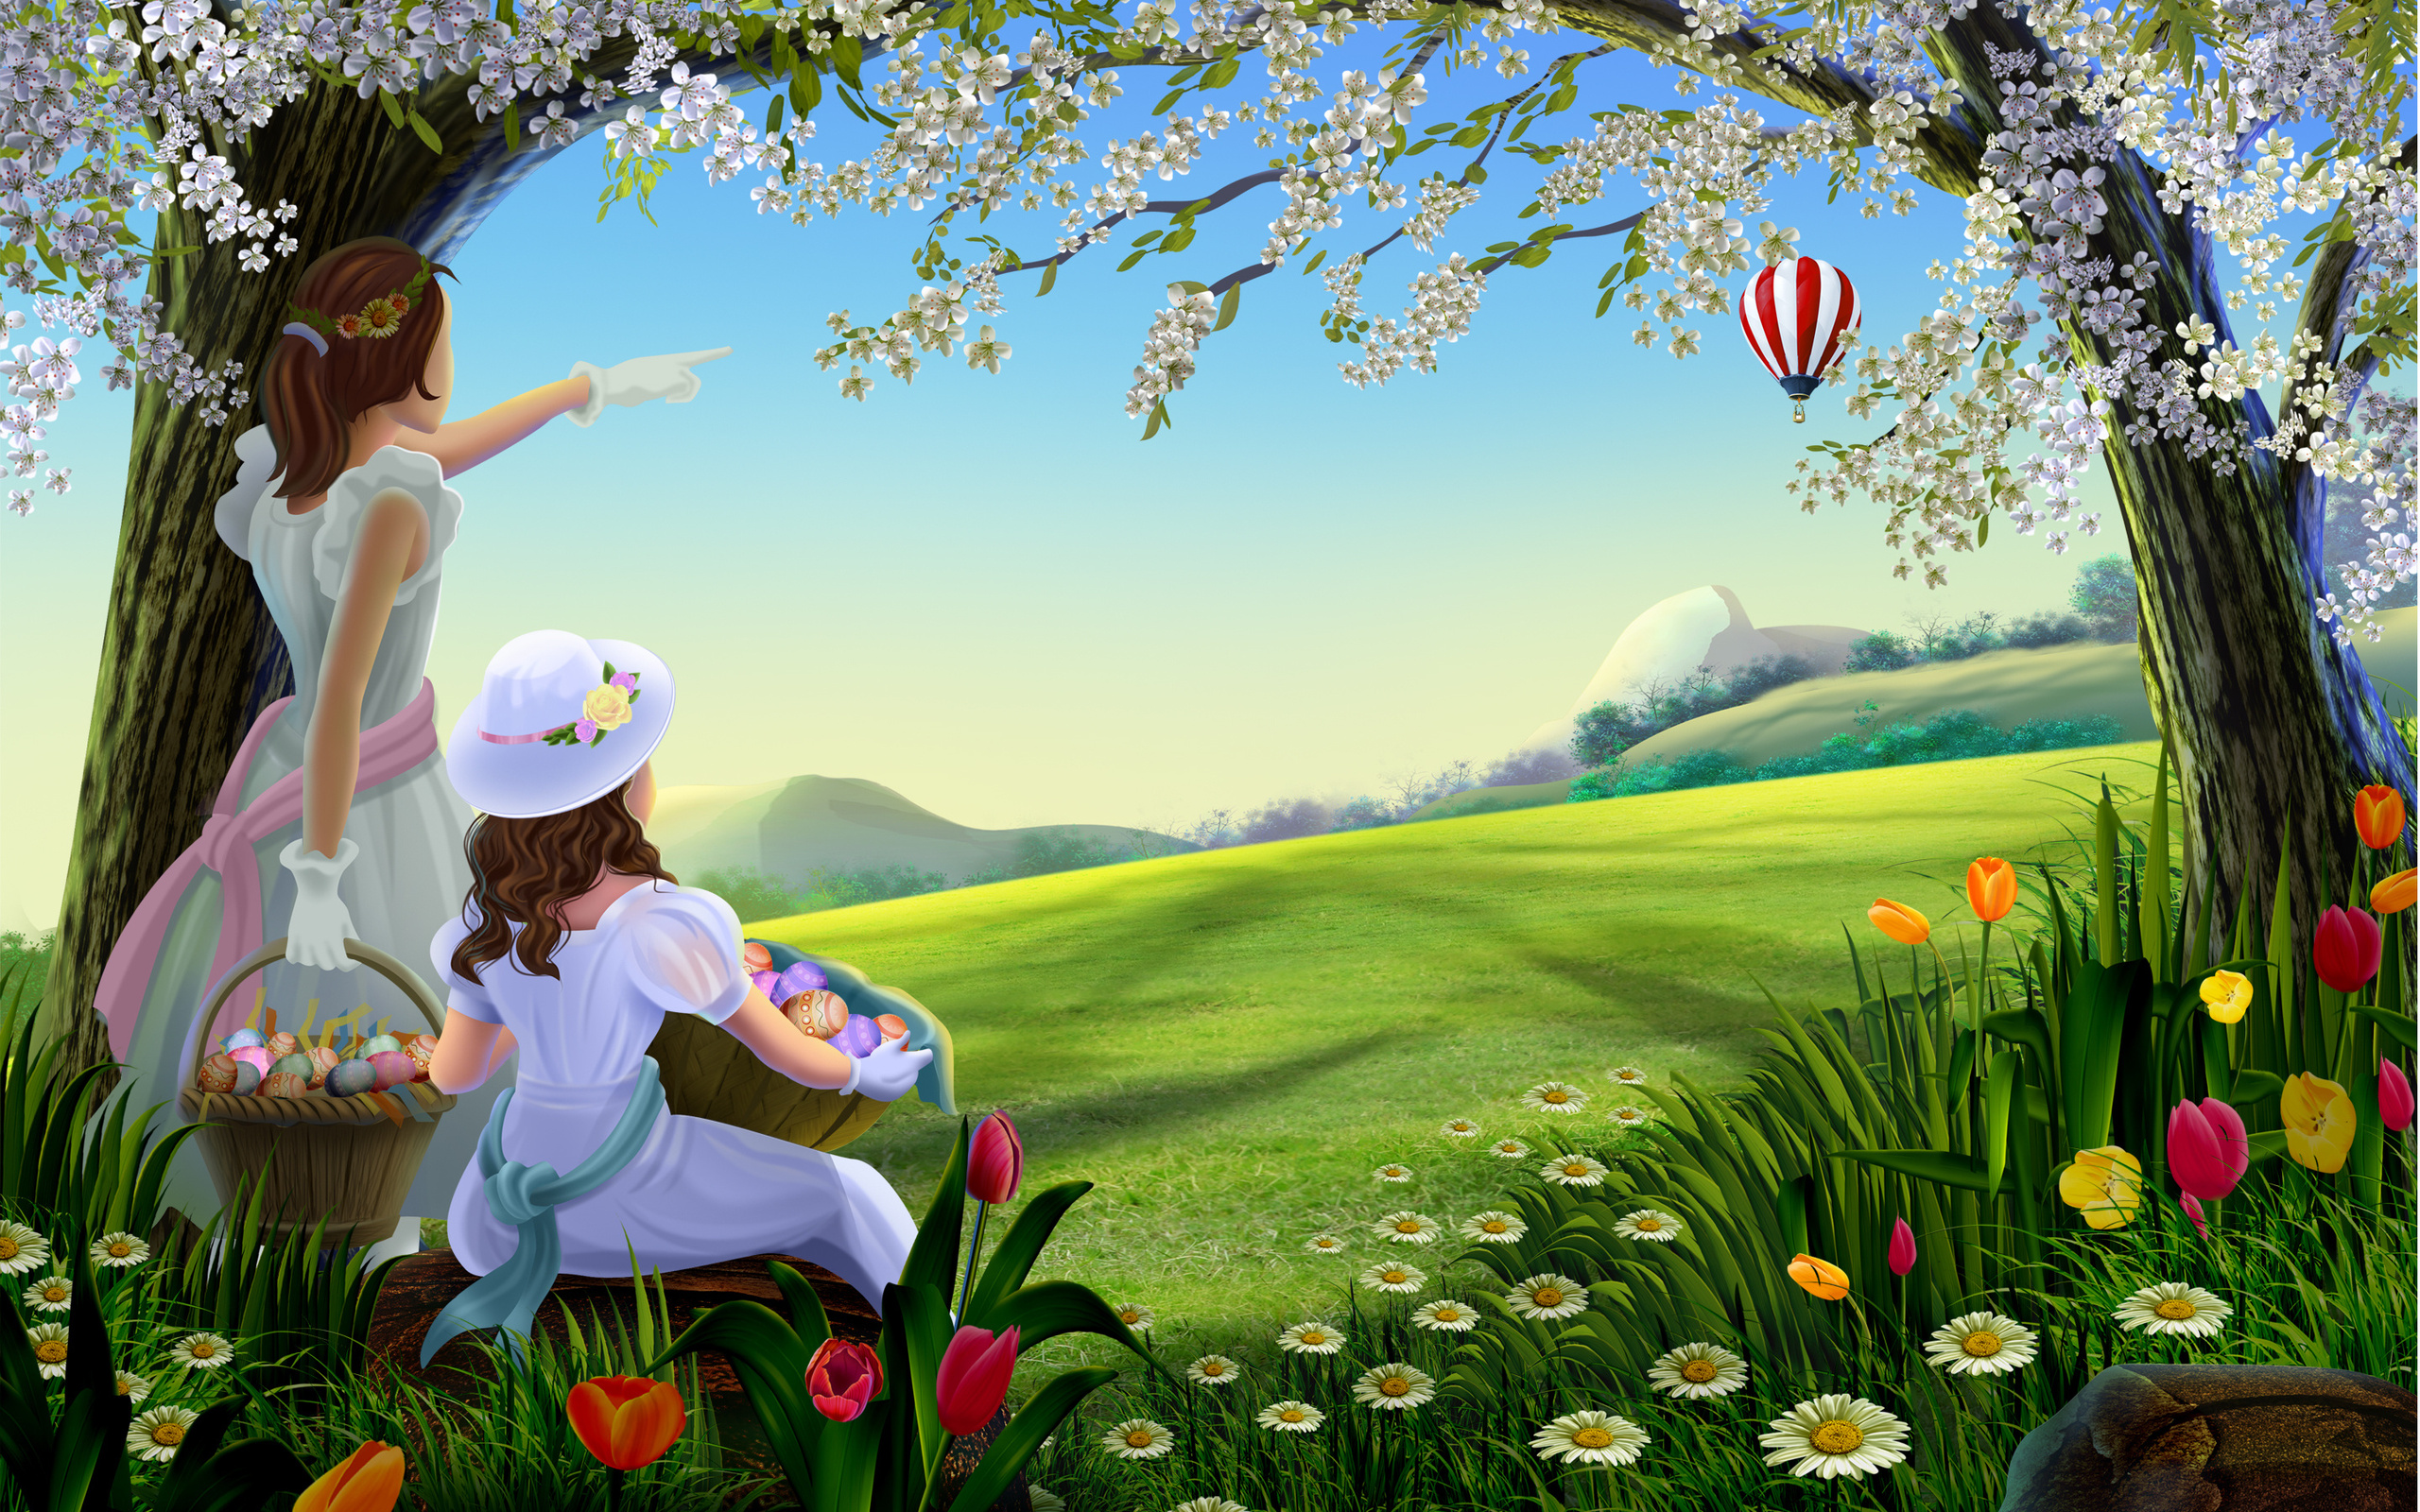 весна, цветущие деревья, девочки, корзины, цветы, зеленое поле, воздушный шар, картина, Spring, flowering trees, girls, baskets, flowers, green field, balloon, picture